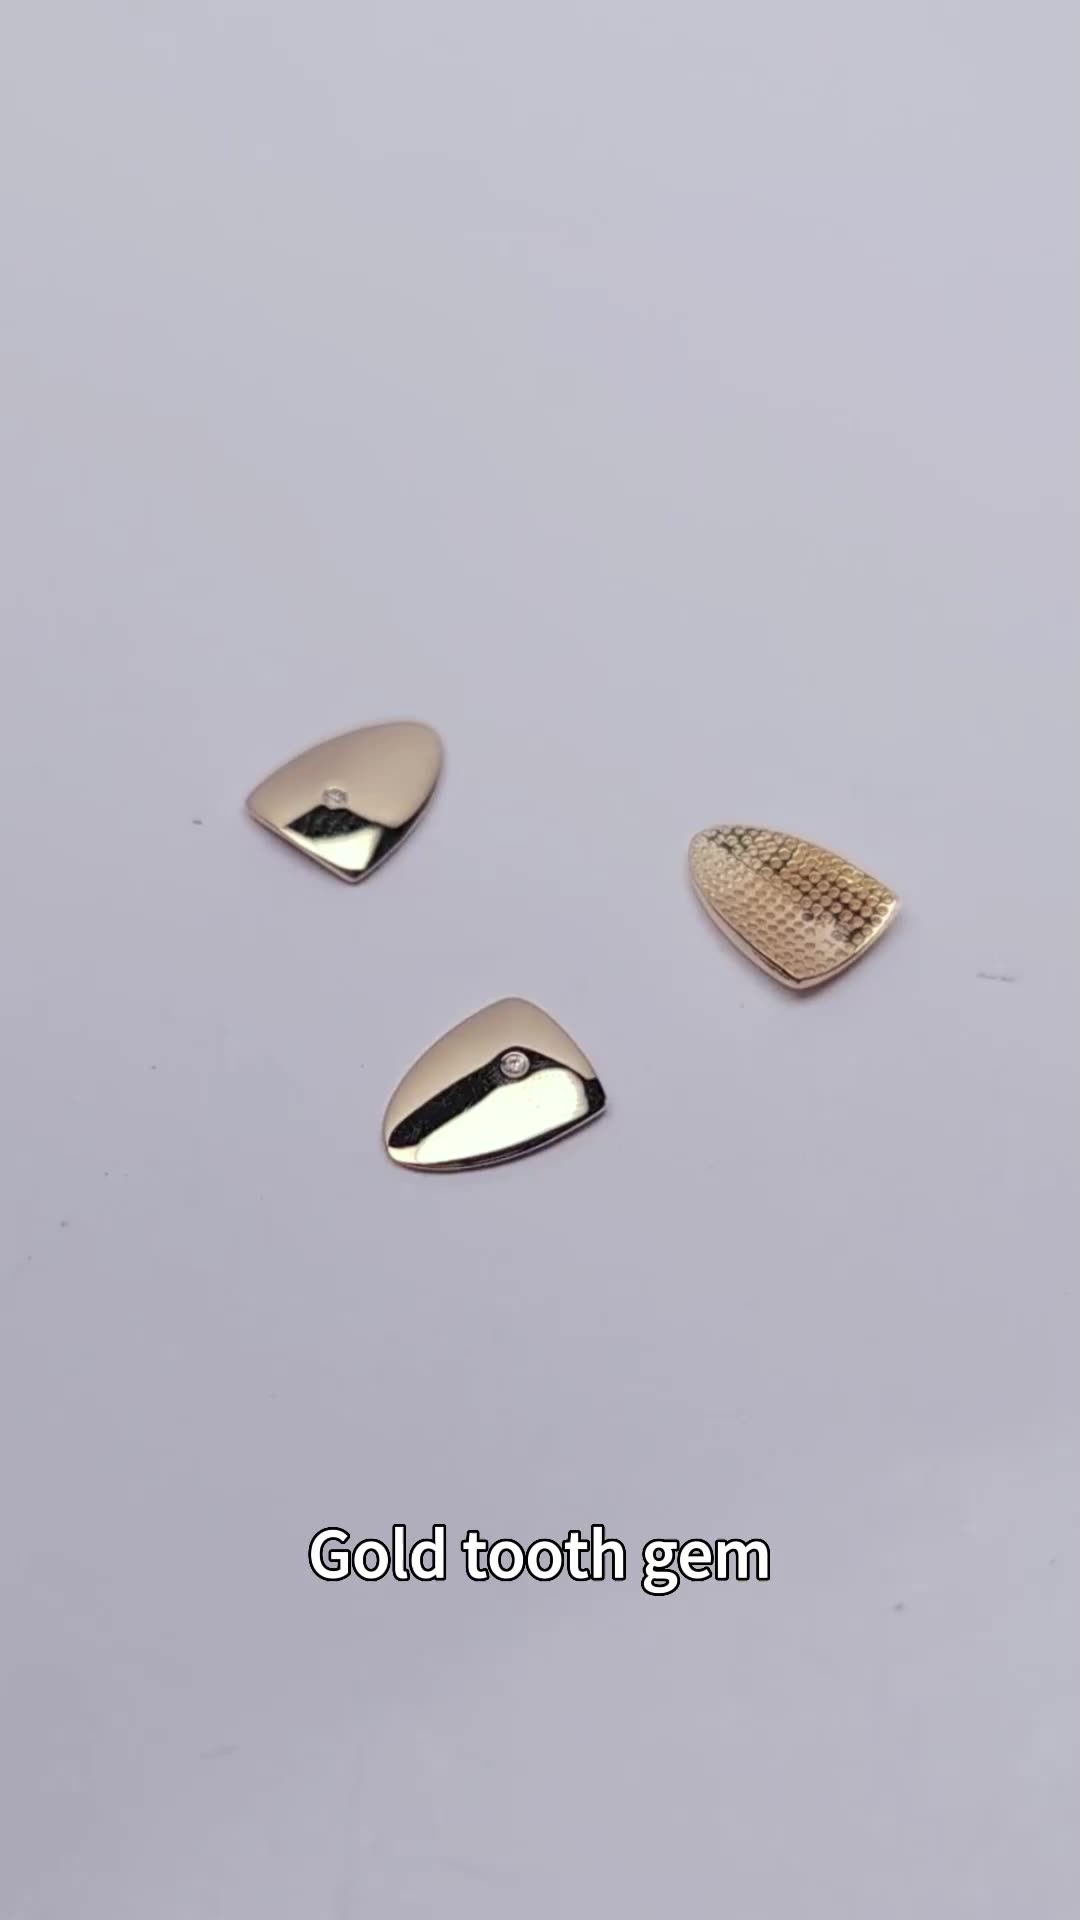 Oem odm мода зубочистые украшения зубов зубов драгоценных камней, запечатлевшие настоящие твердые 14 тыс. Золотой золотой натуральный бриллиант Gems1